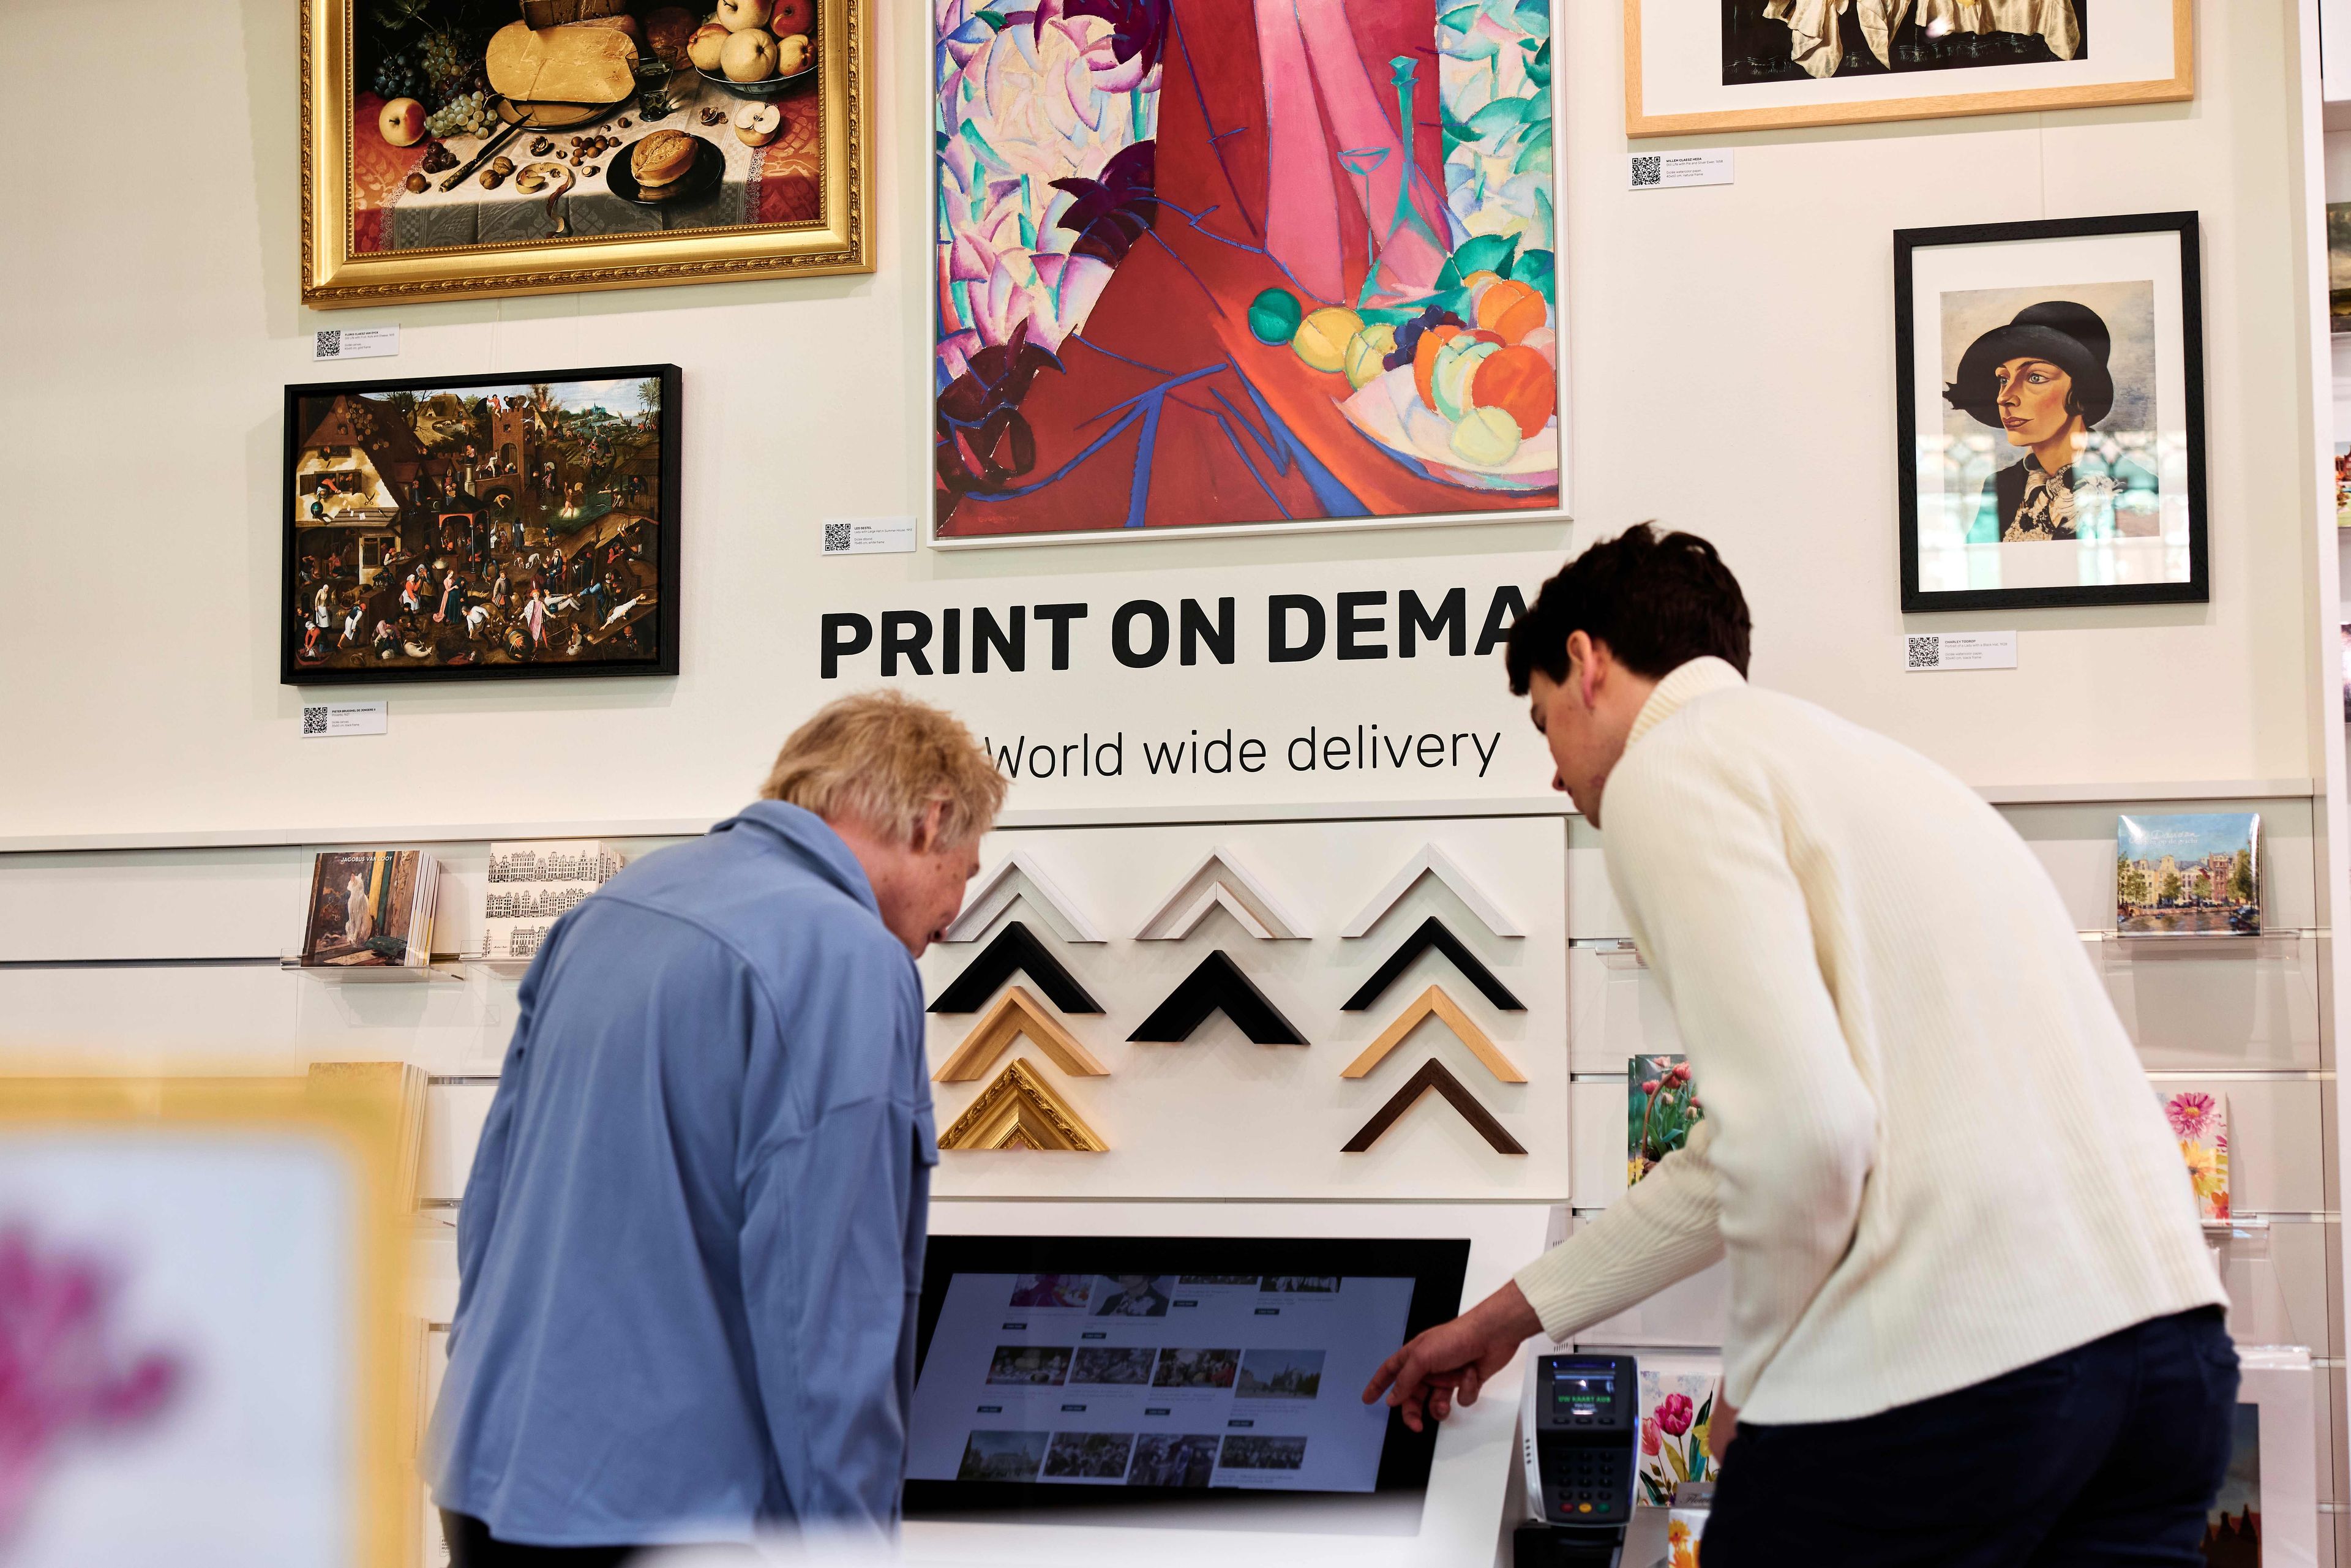 Twee bezoekers bekijken de opties voor Print on Demand in de museumwinkel.